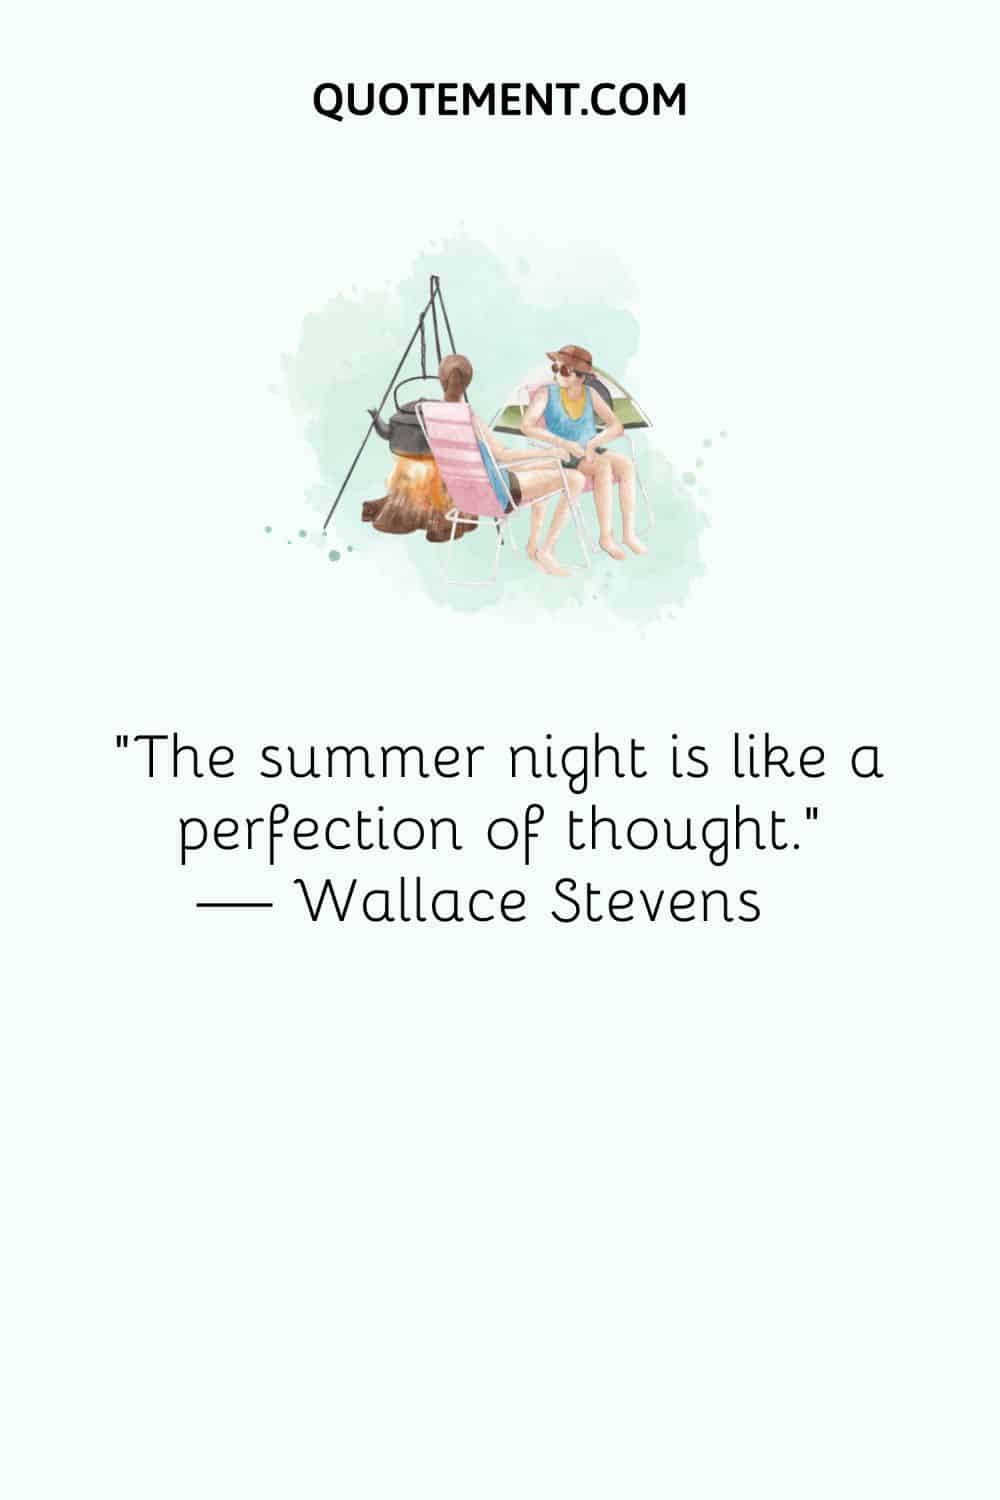 "La noche de verano es como la perfección del pensamiento". - Wallace Stevens